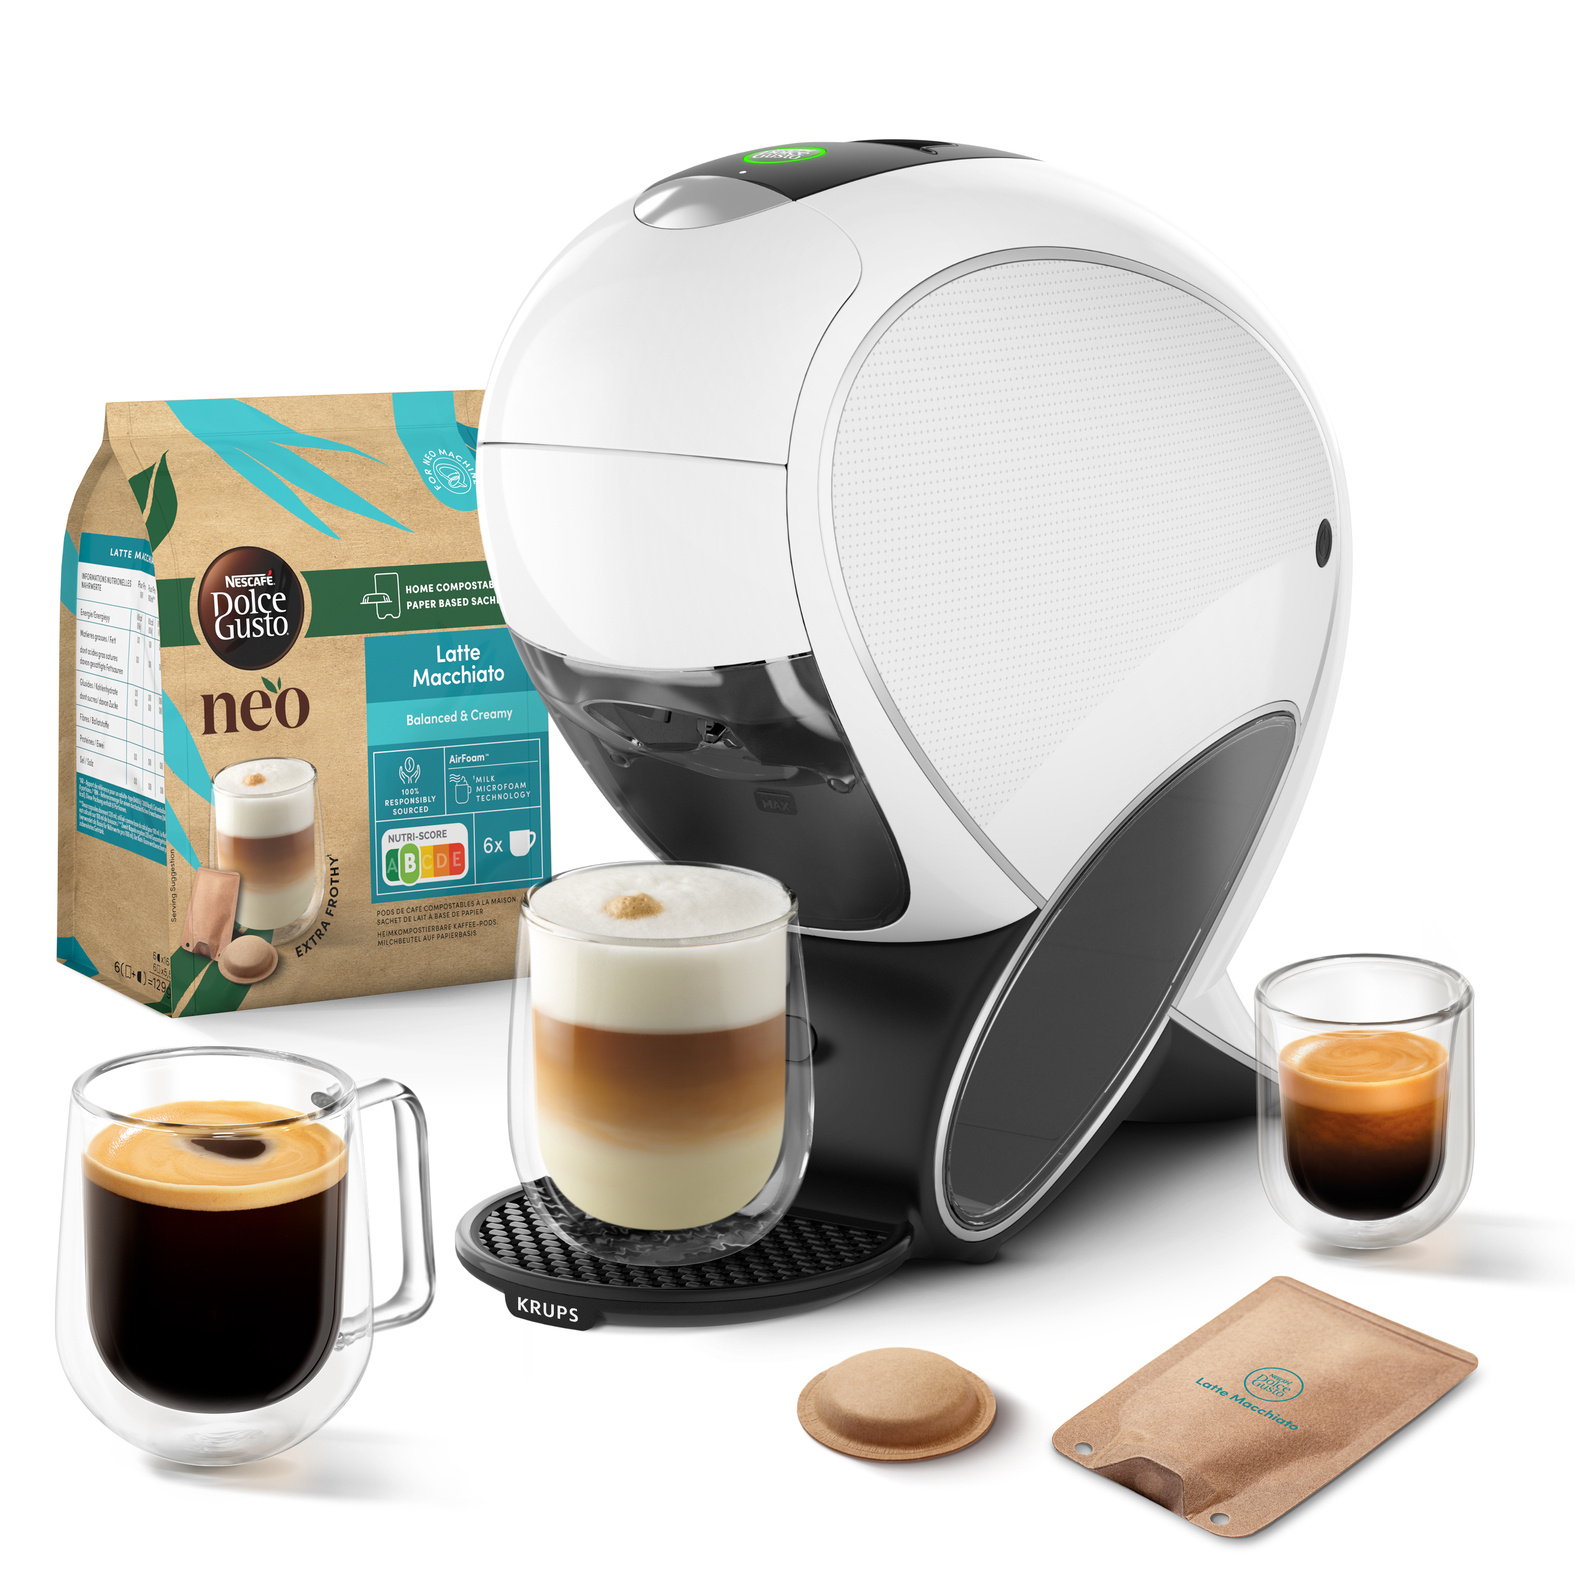 La machine à café Krups vendue et expédiée par Cdiscount est en promotion,  achetez la vôtre